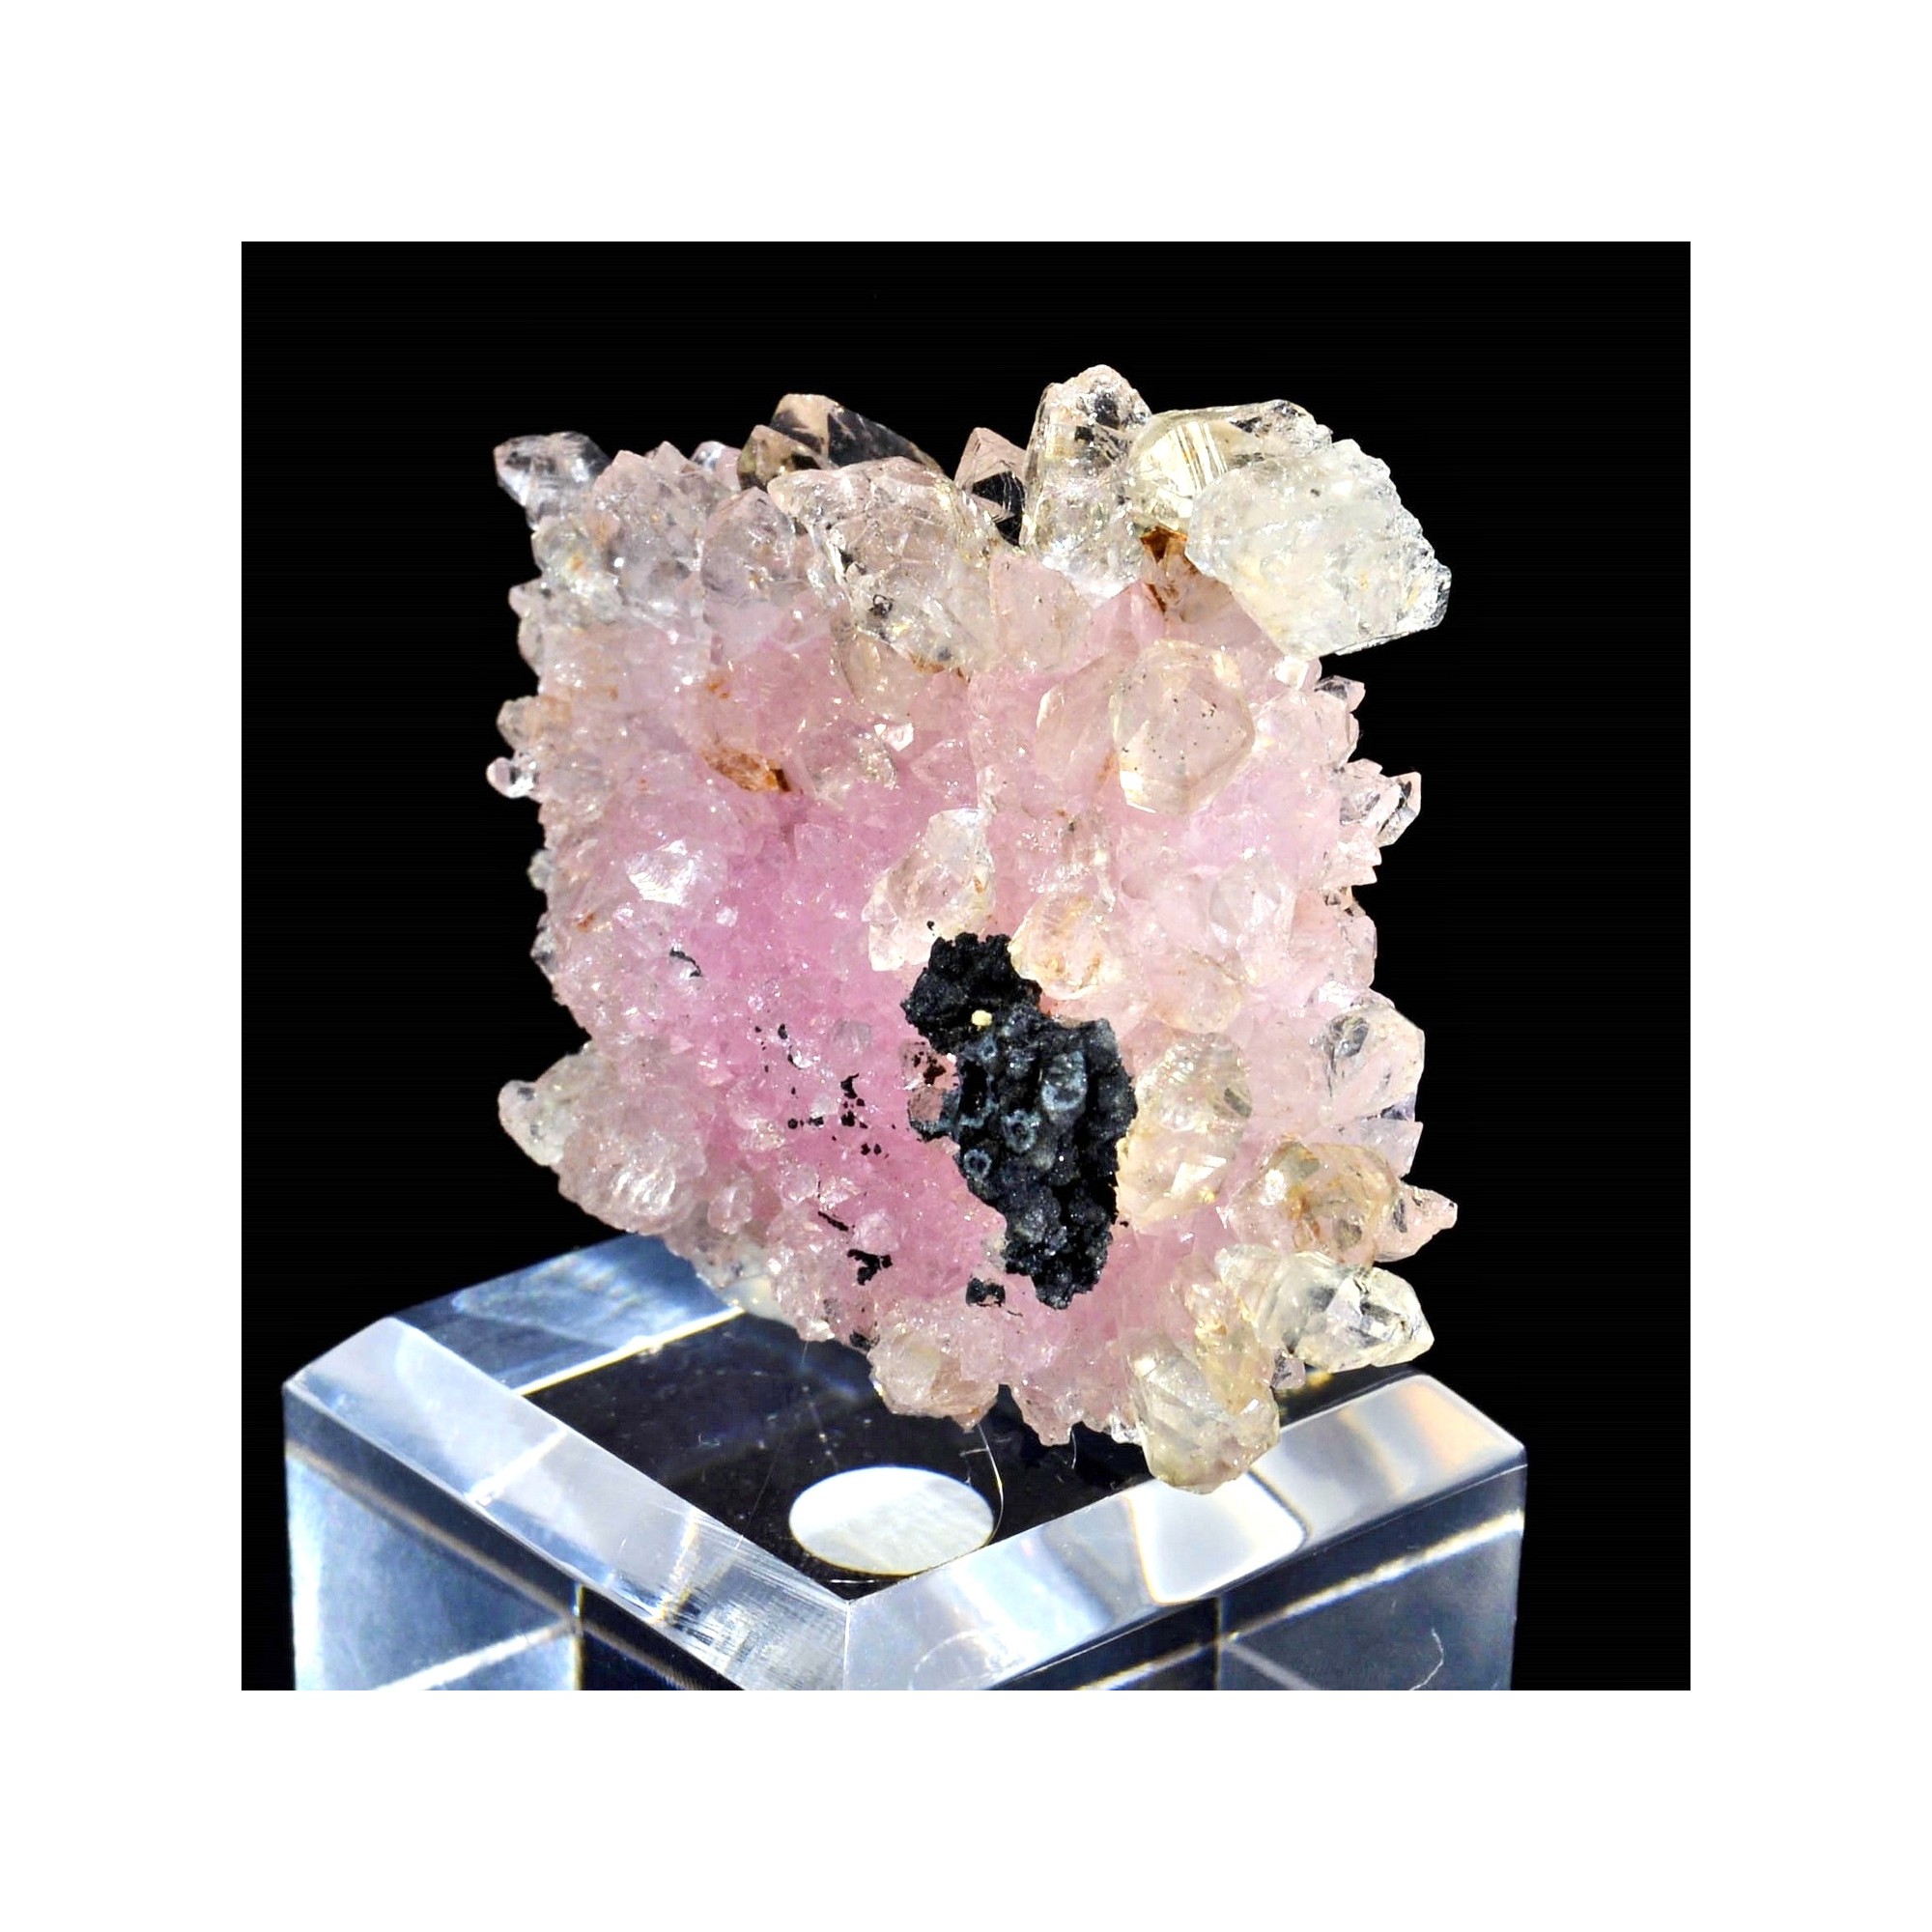 Pink quartz cristallized and smoky quartz - Coronel Murta, Minas Gerais, Brazil